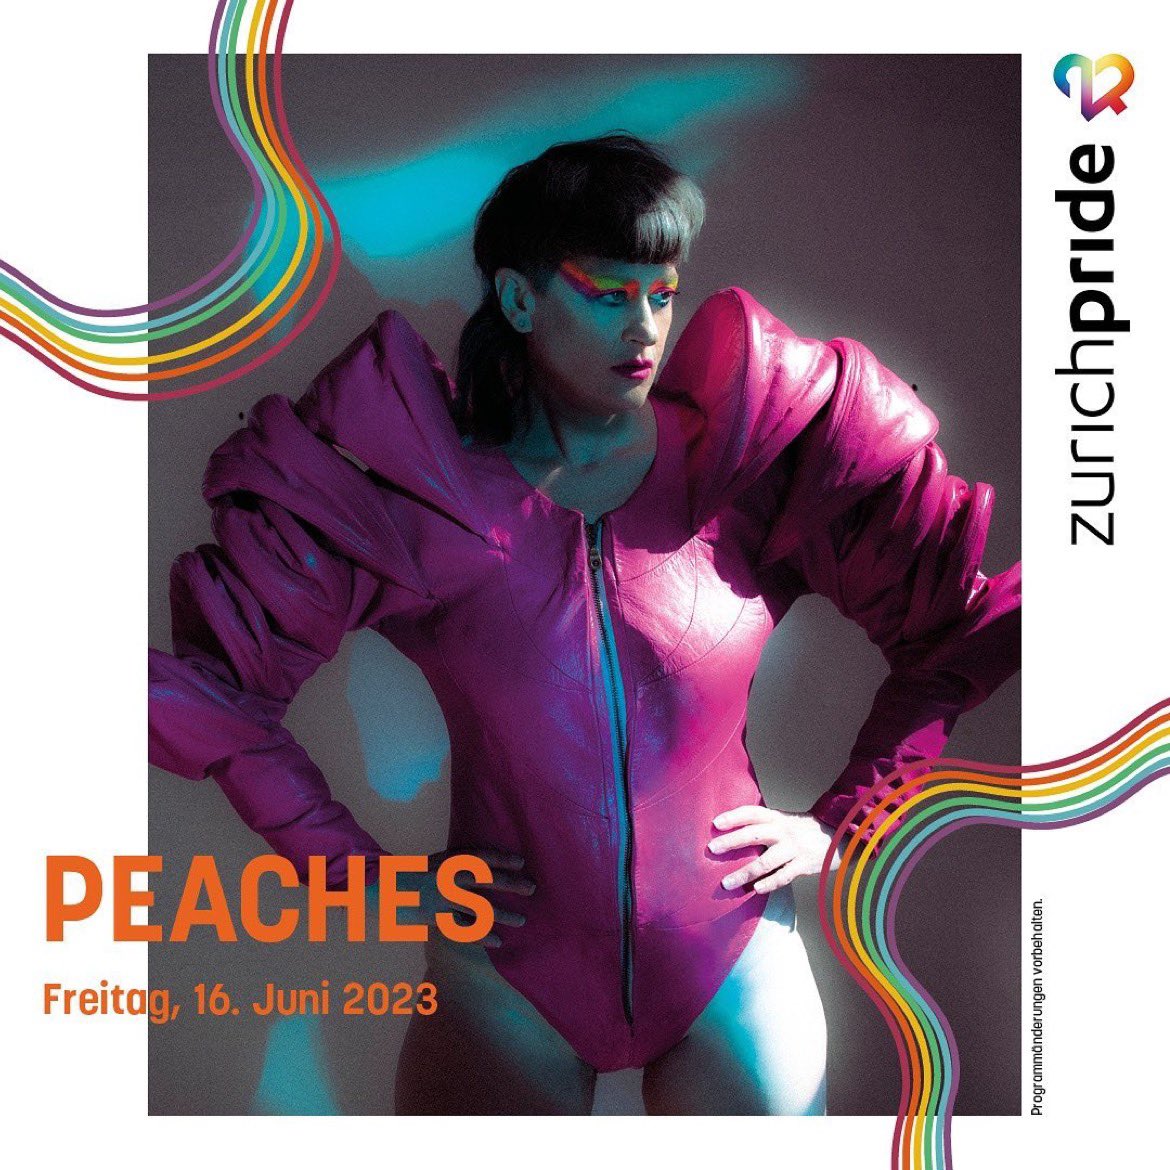 ZURICH PRIDE! June 16 - free entry zurichpridefestival.ch 🏳️‍🌈🏳️‍⚧️